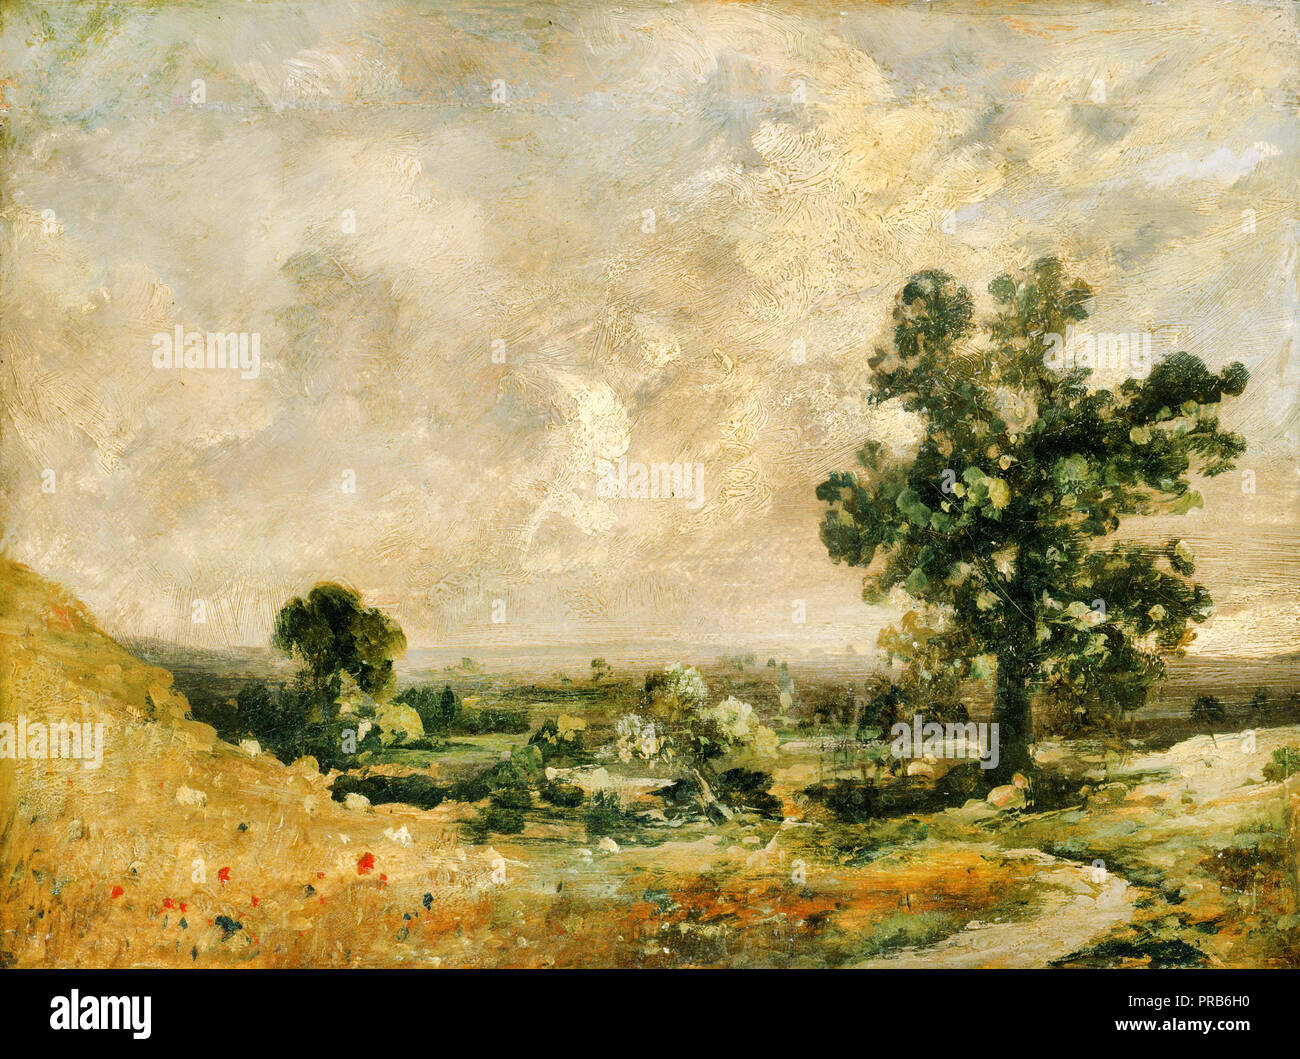 John Constable, paysage anglais, date inconnue, huile sur carton mis en panneau, Phillips Collection, Washington, D.C., USA. Banque D'Images